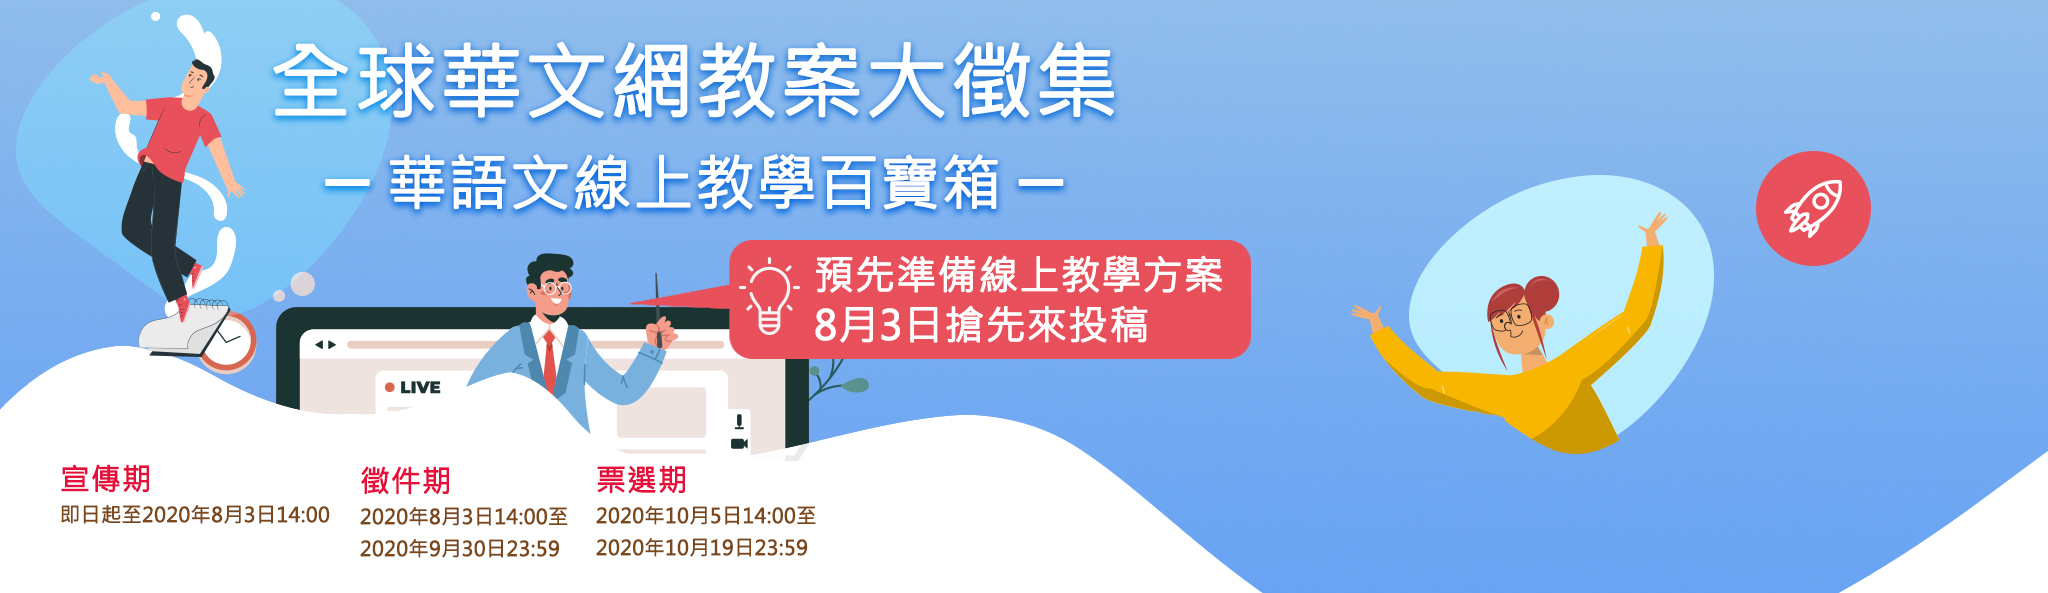 華語文線上教學百寶箱